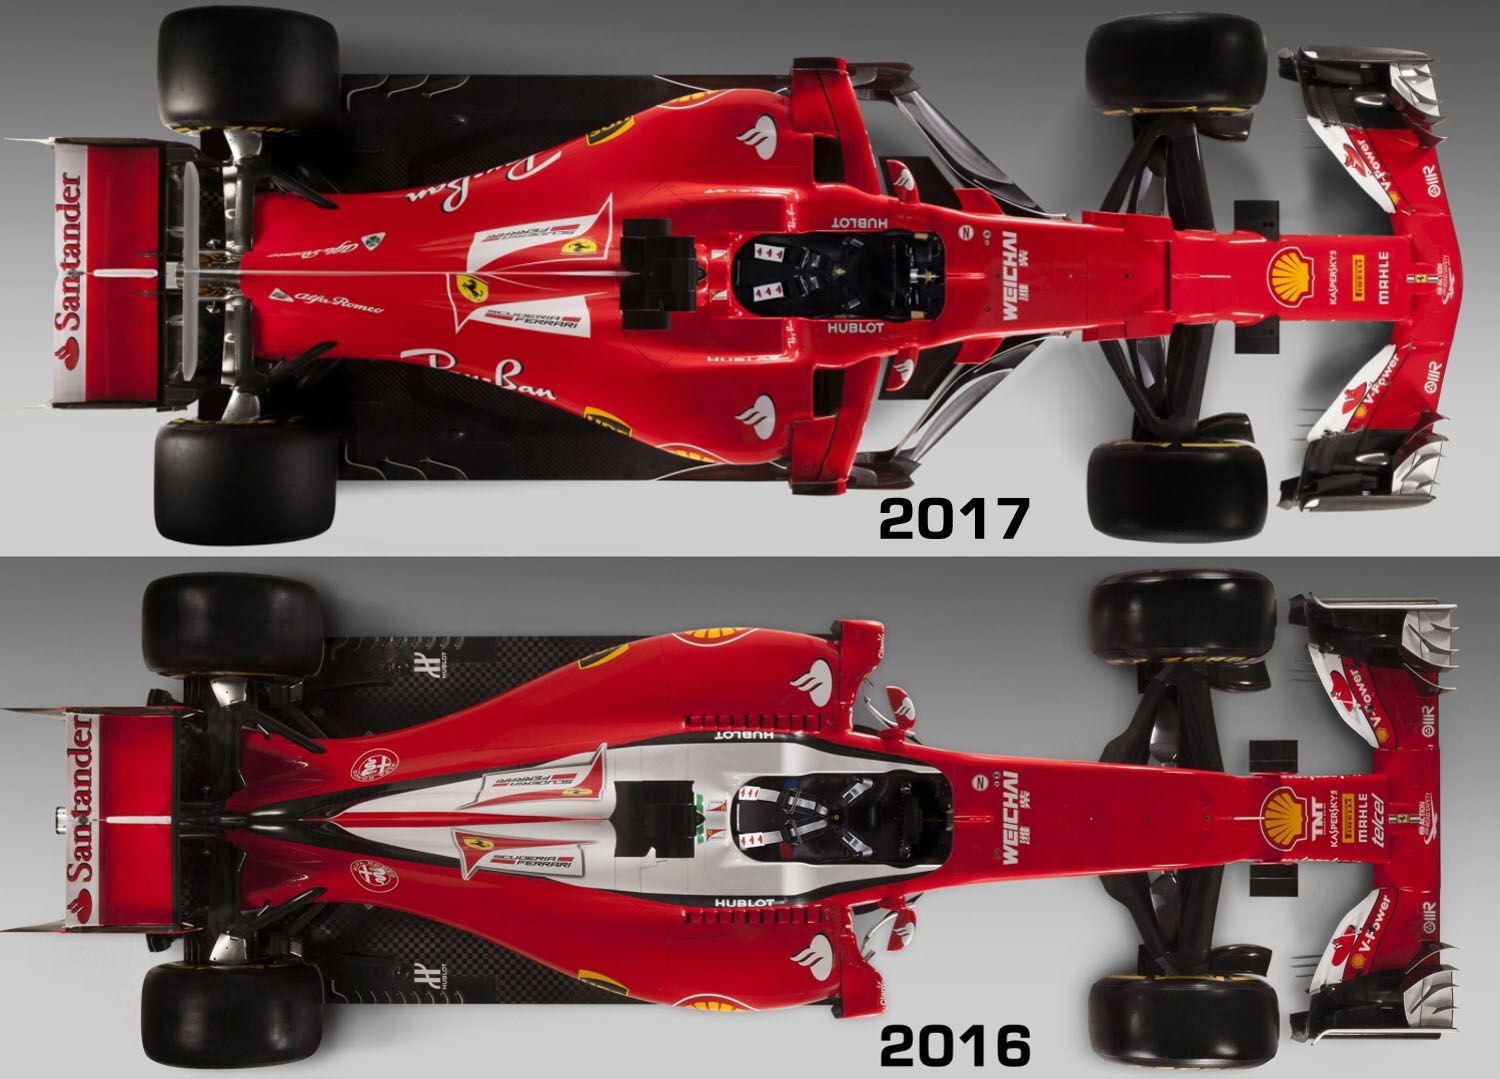 F1: Ferrari SF70H (2017) vs. SF16-H (2016)